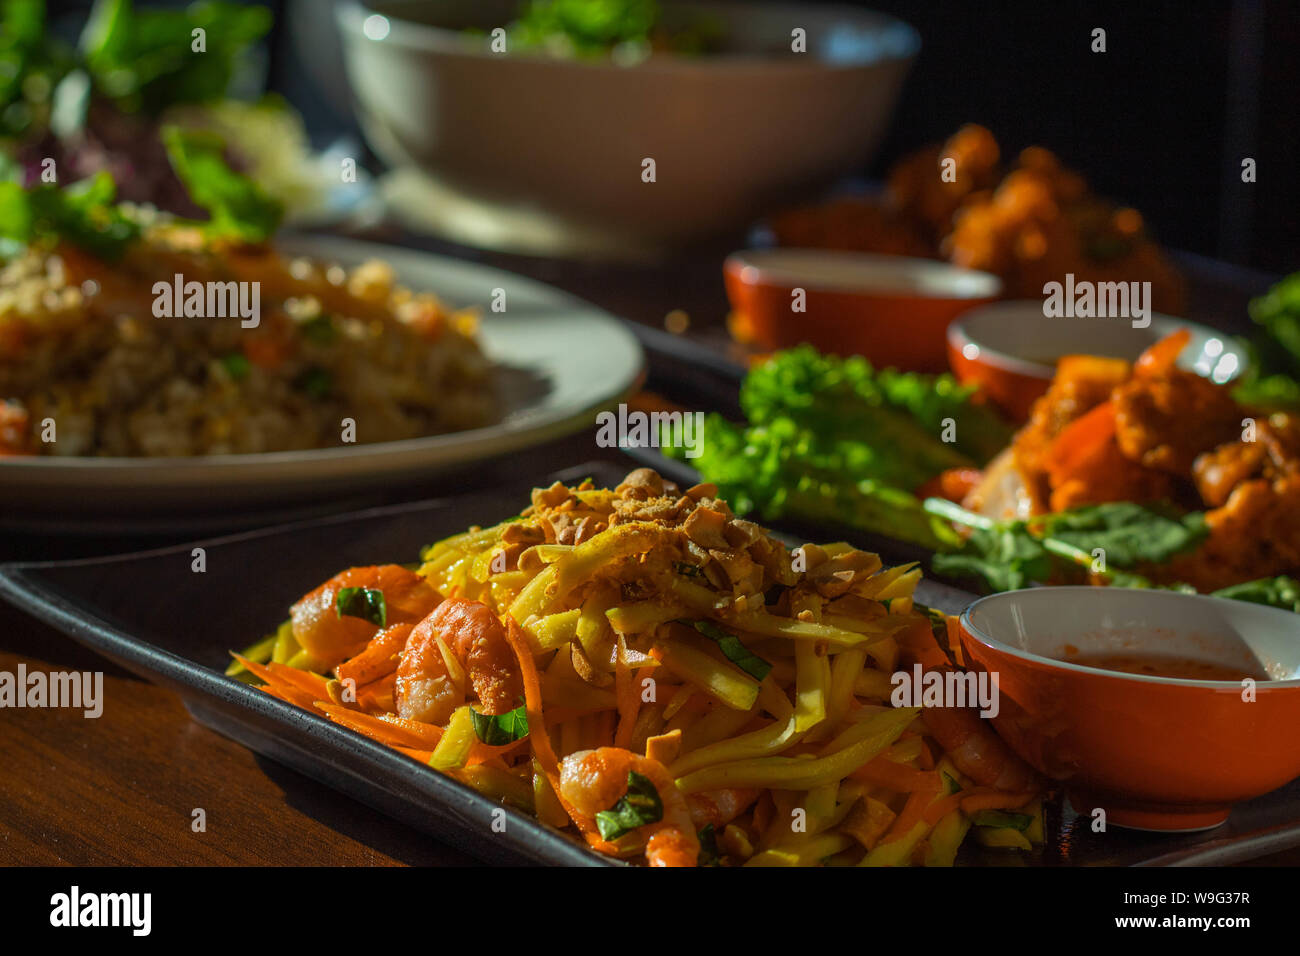 Juste un stock photo d'aliments asiatiques Banque D'Images